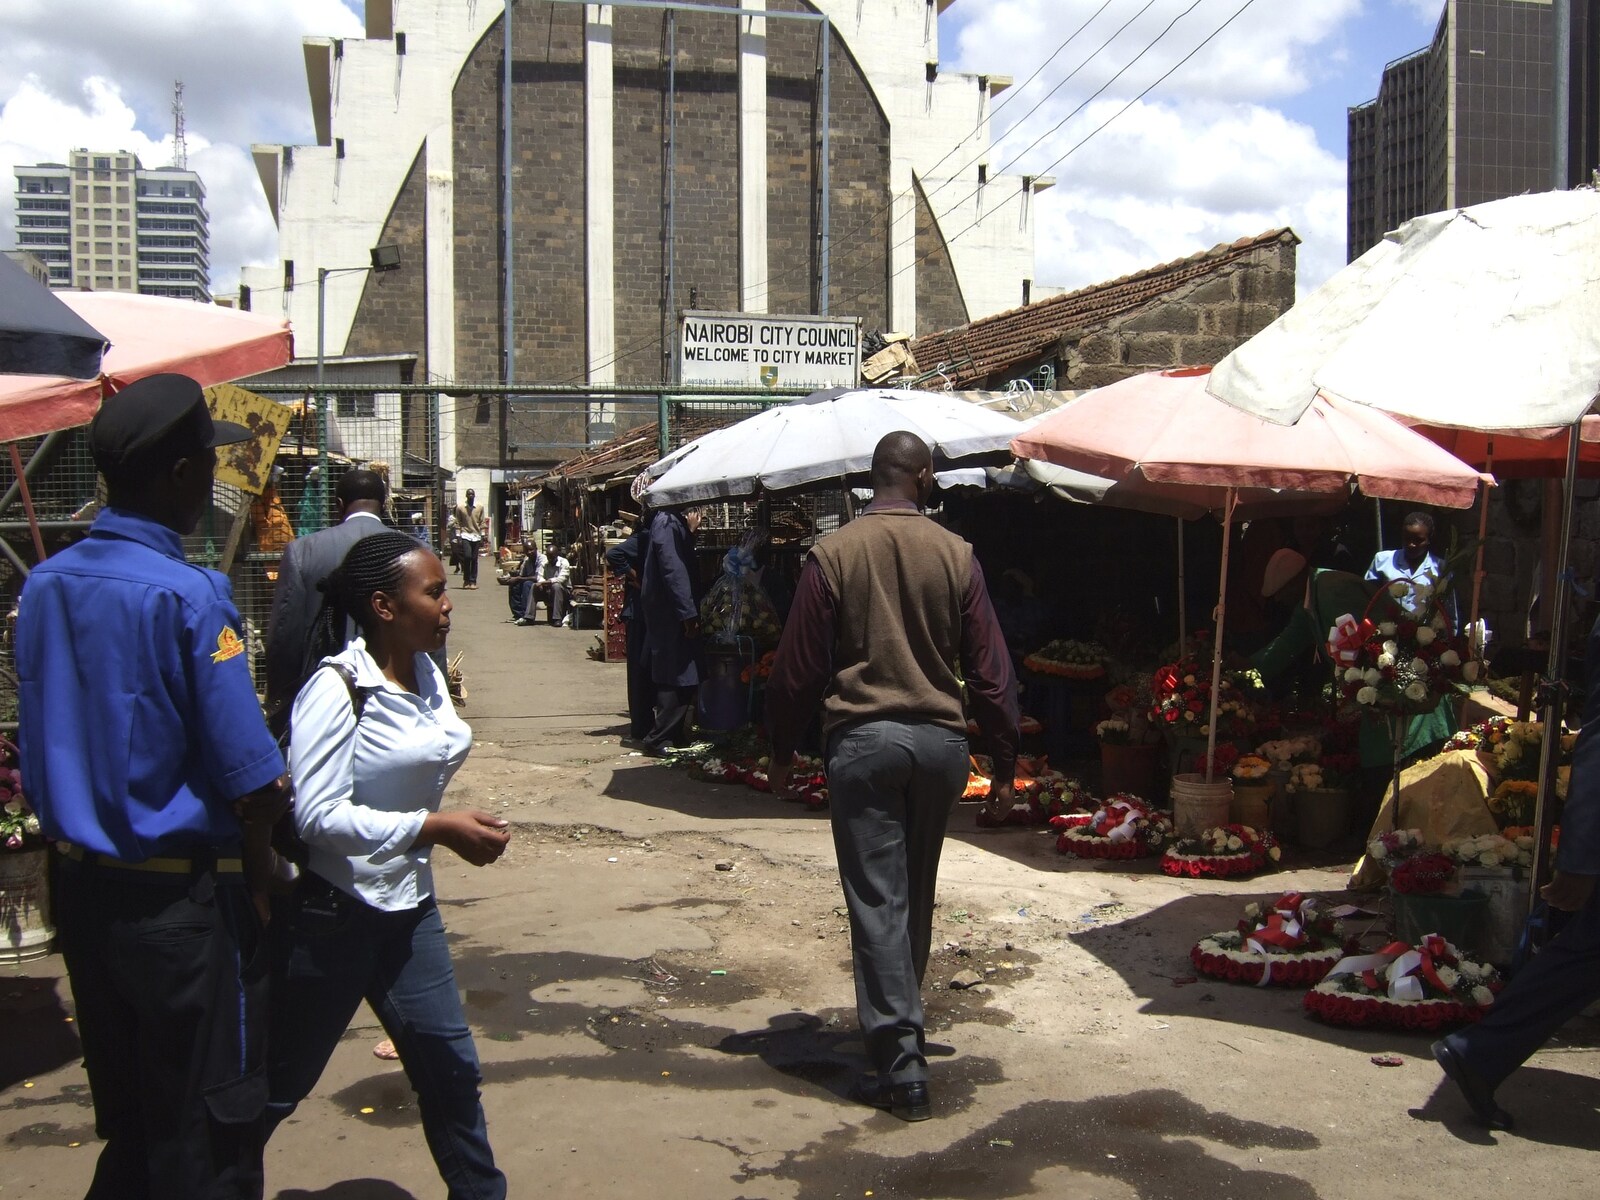 Nairobi market life from Nairobi and the Road to Maasai Mara, Kenya, Africa - 1st November 2010